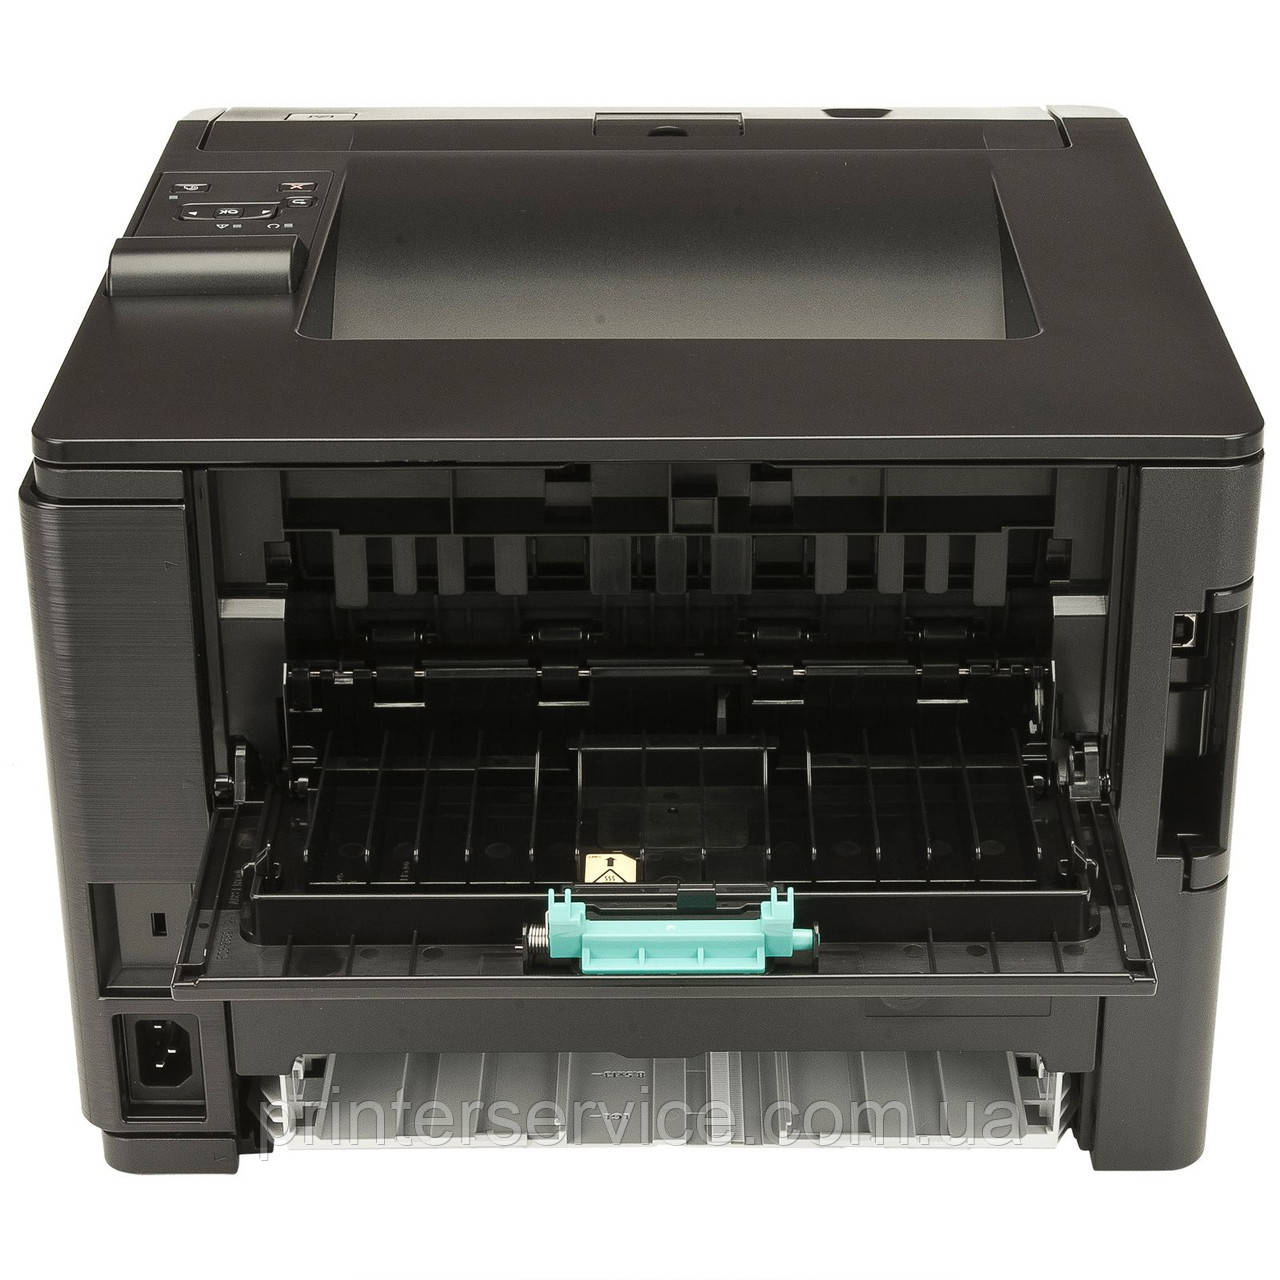 HP LaserJet Pro 400 M401a, монохромный принтер А4 купить в Украине по цене 7 975 грн. | Триал